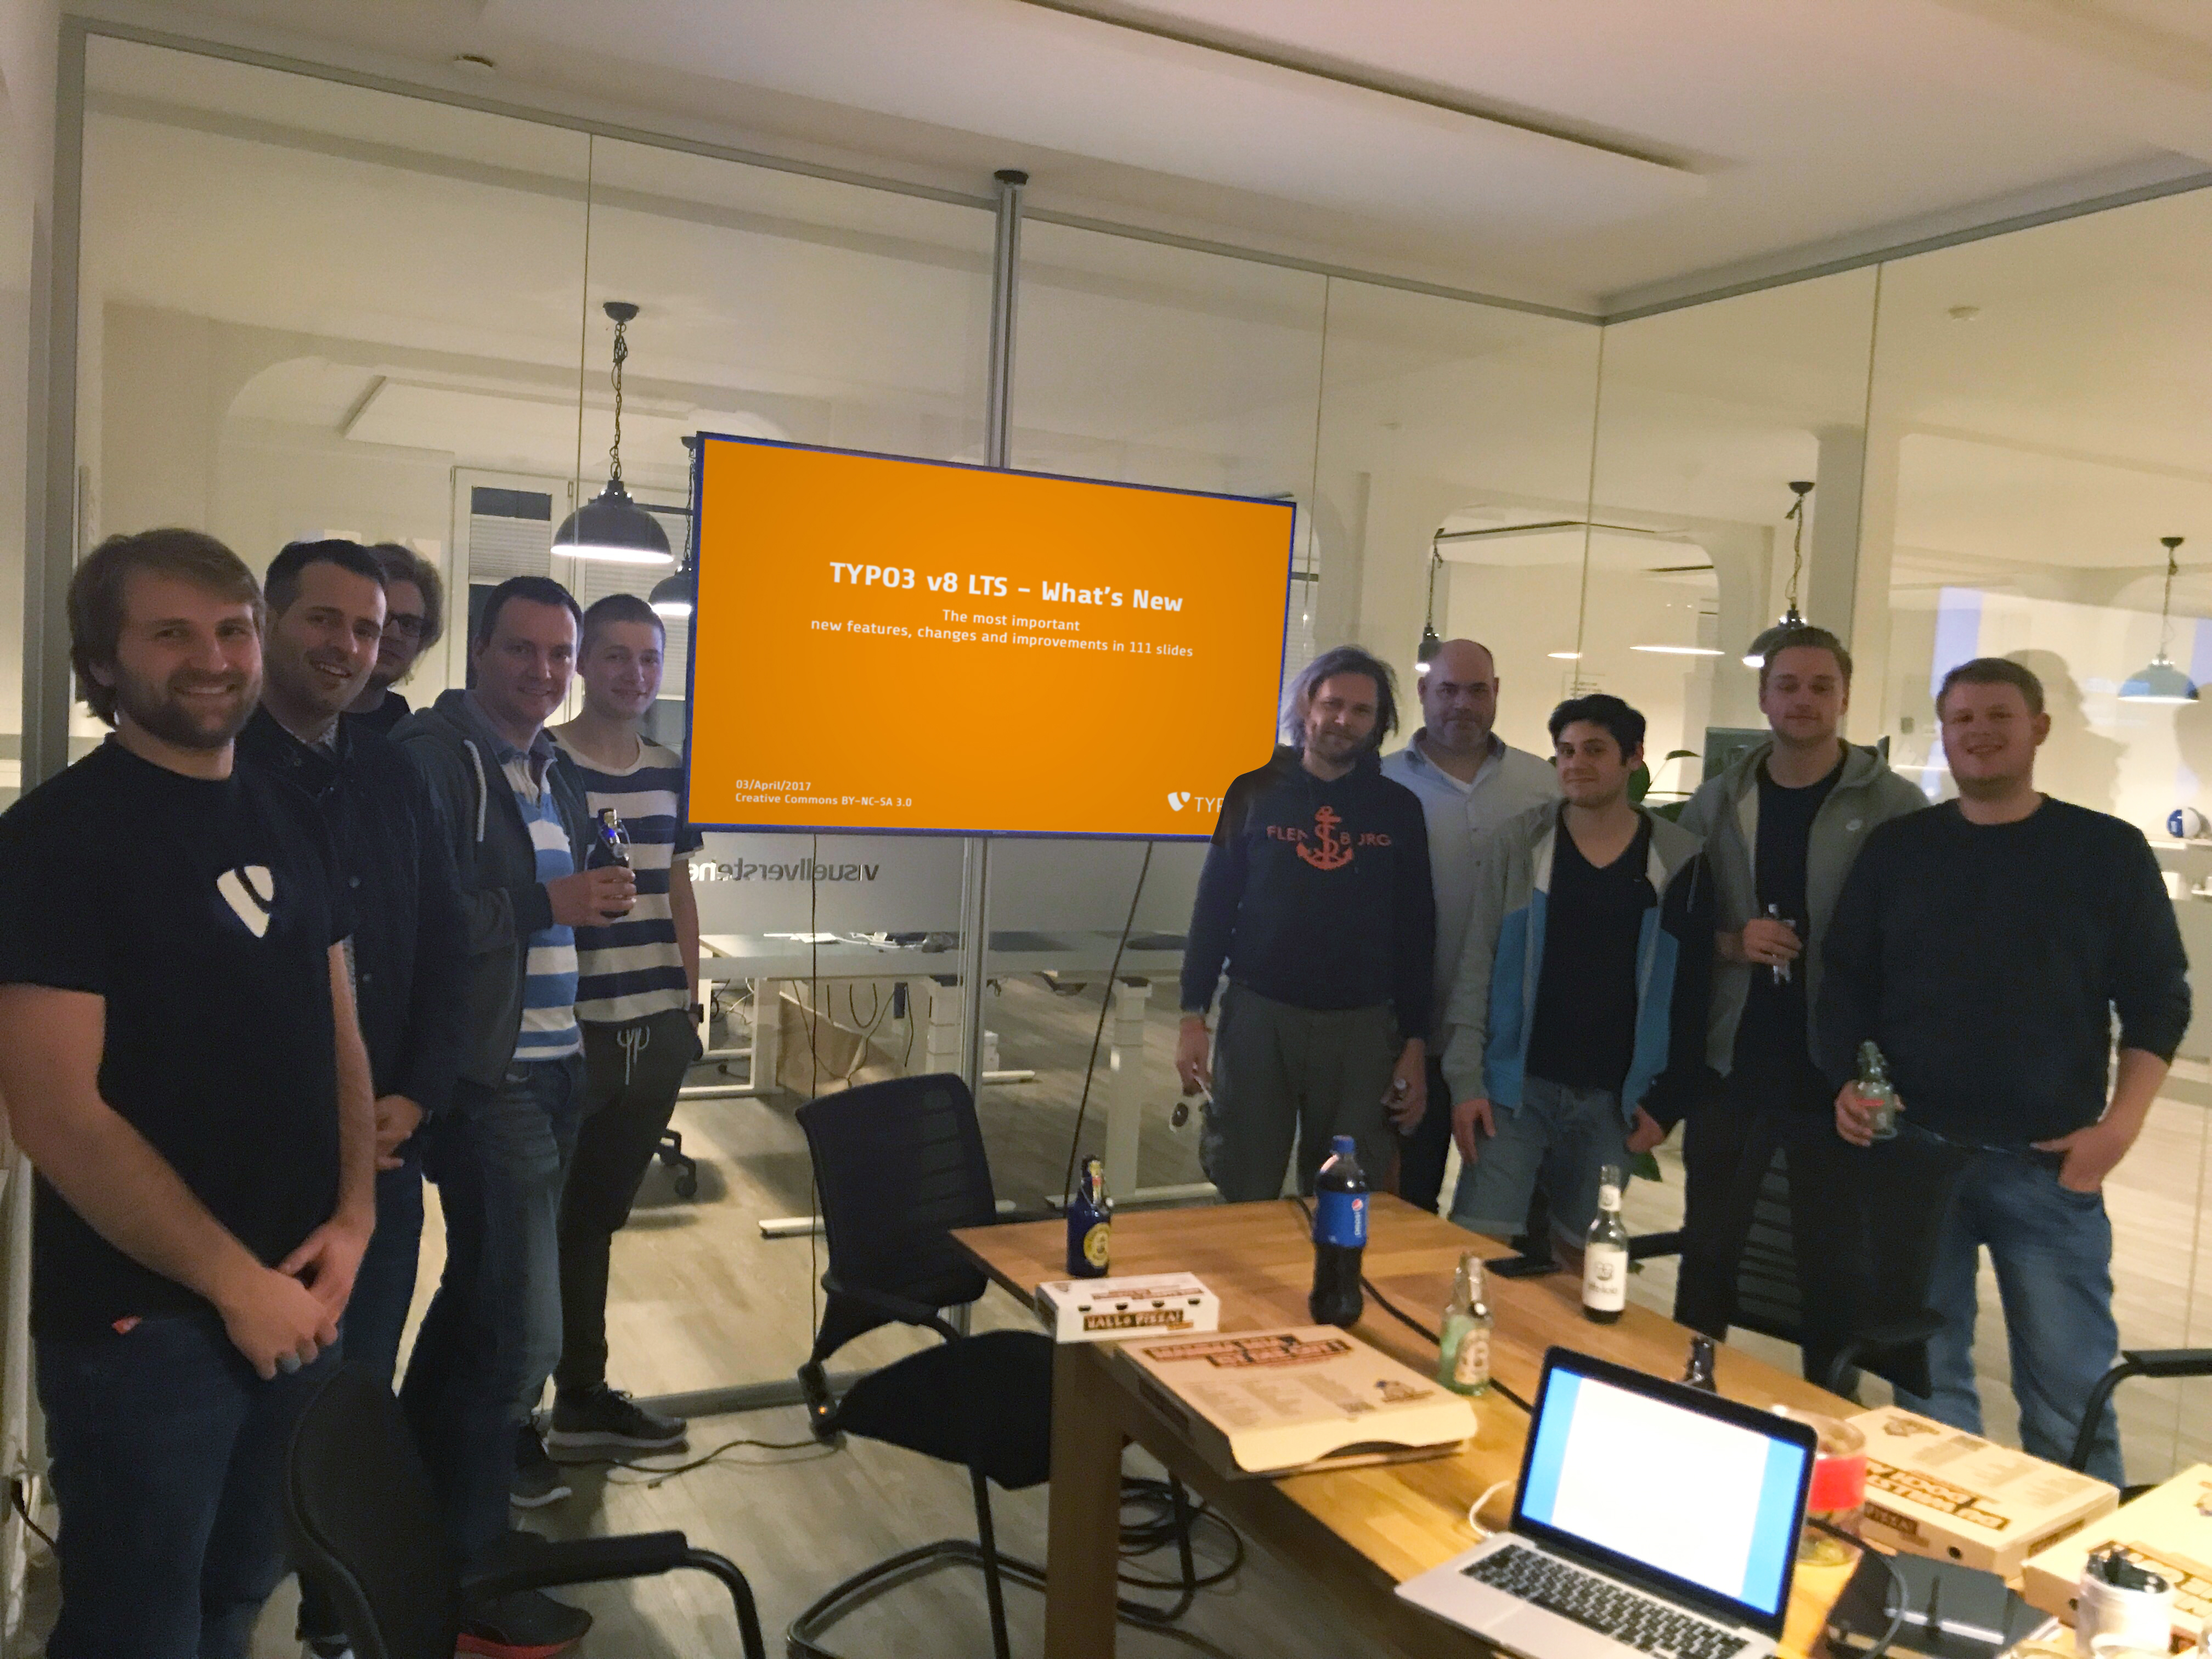 Das Team von visuellverstehen posiert in einem verglasten Besprechungsraum vor einem orangen Bildschirm mit einer Typo3-Überschrift.